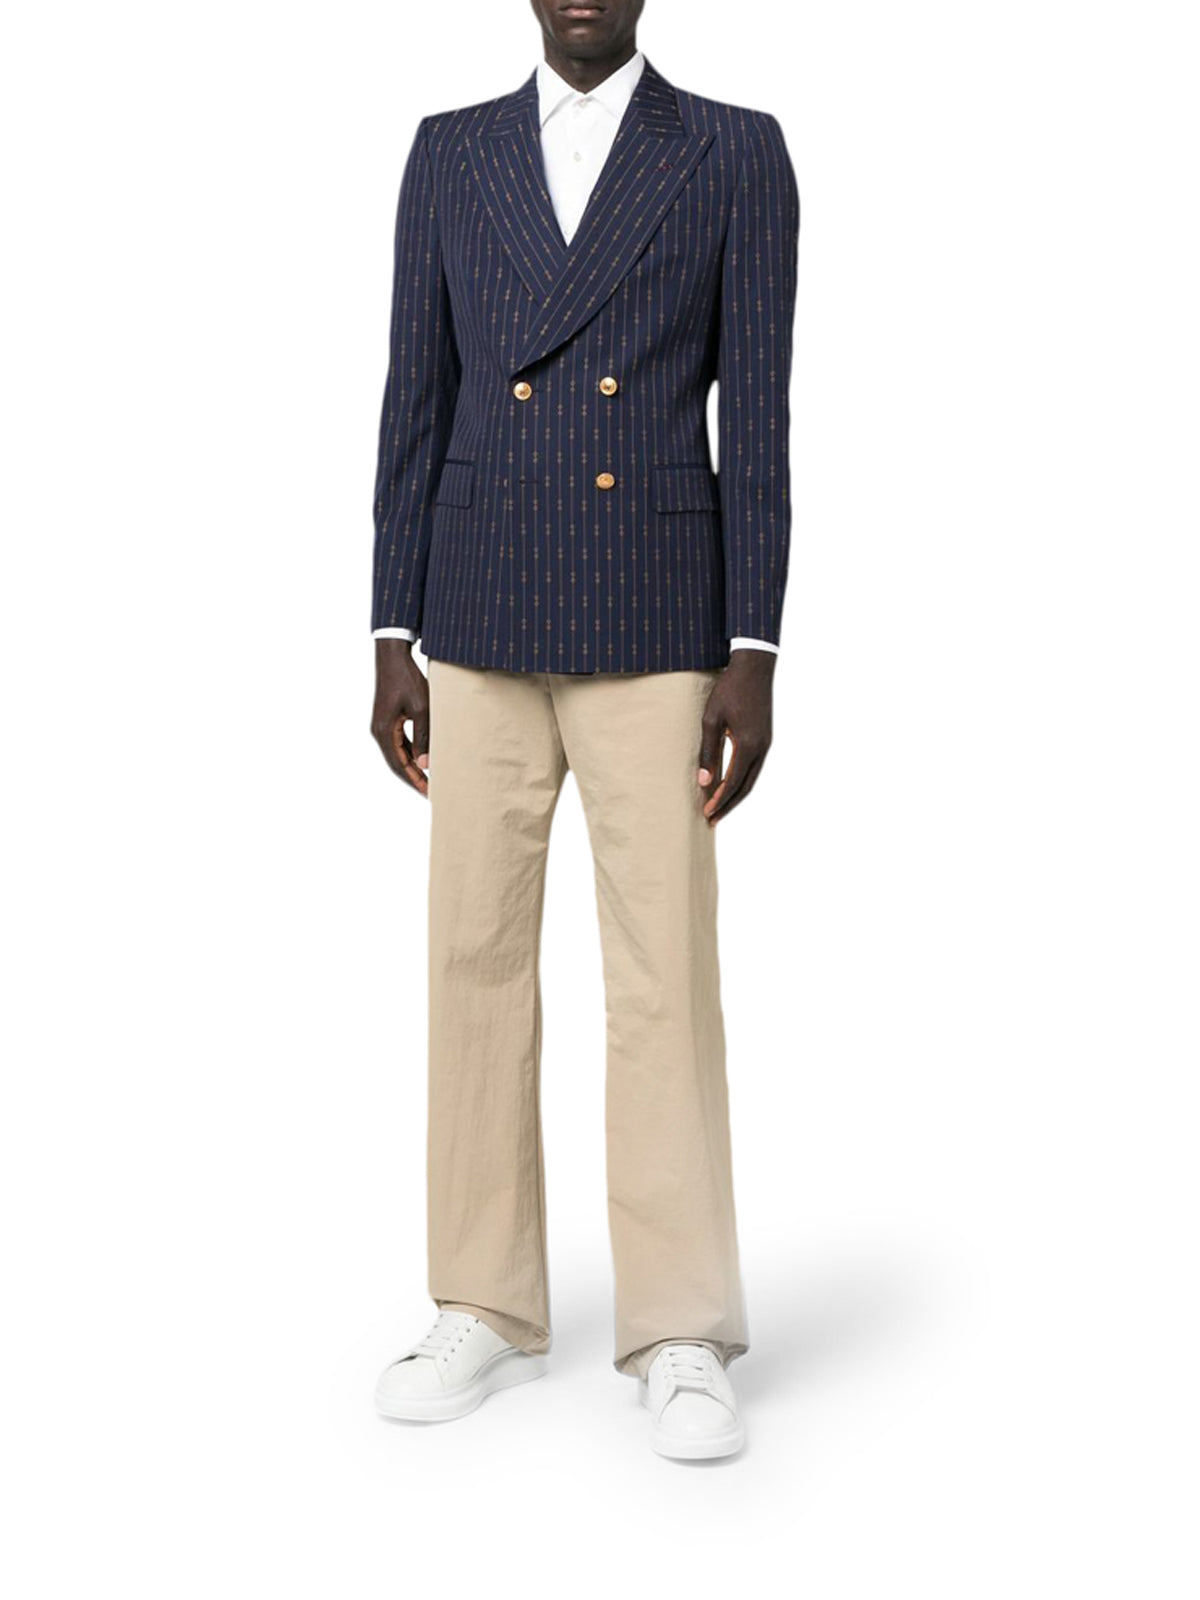 Gucci Stripe Trimmed Cotton Pocket Square, $134